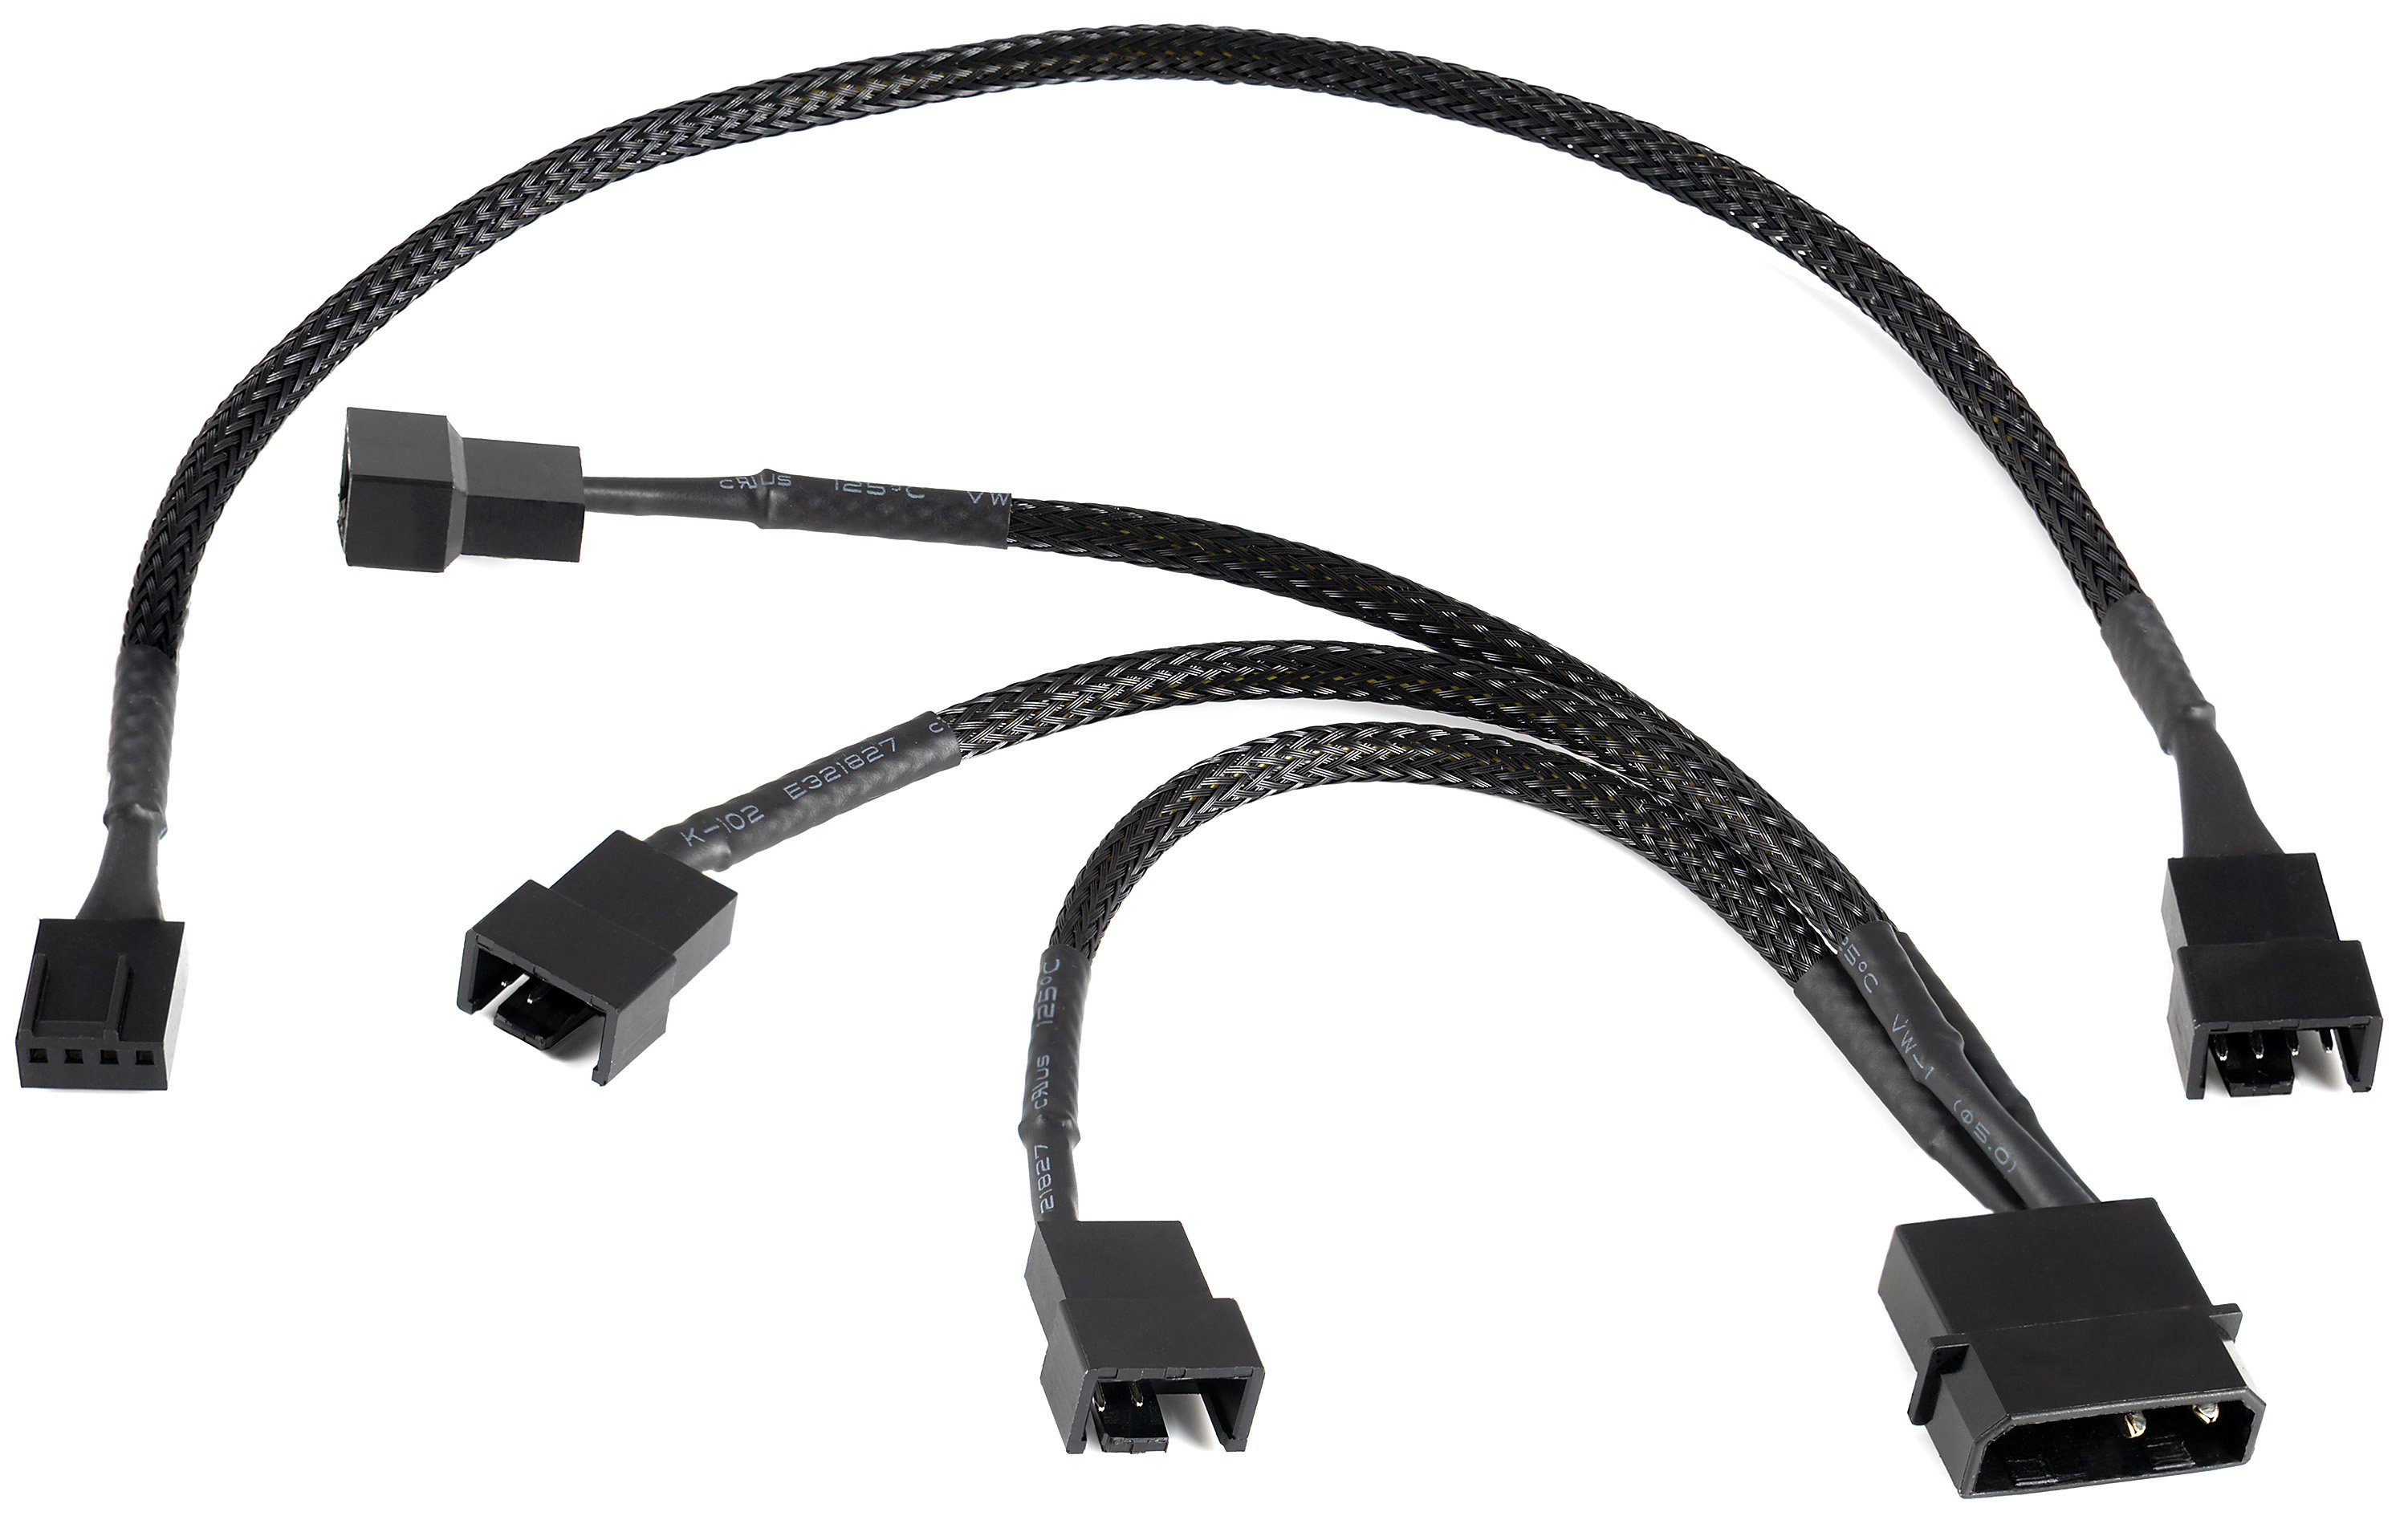 Poppstar Lüfter Kabel Set 12V zum Anschluss von Gehäuselüftern an ein Netzteil Computer-Kabel, Y-Kabel Molex auf 3x 2-Pin-Stecker 15cm + 4-Pin PWM Verlängerung 30cm